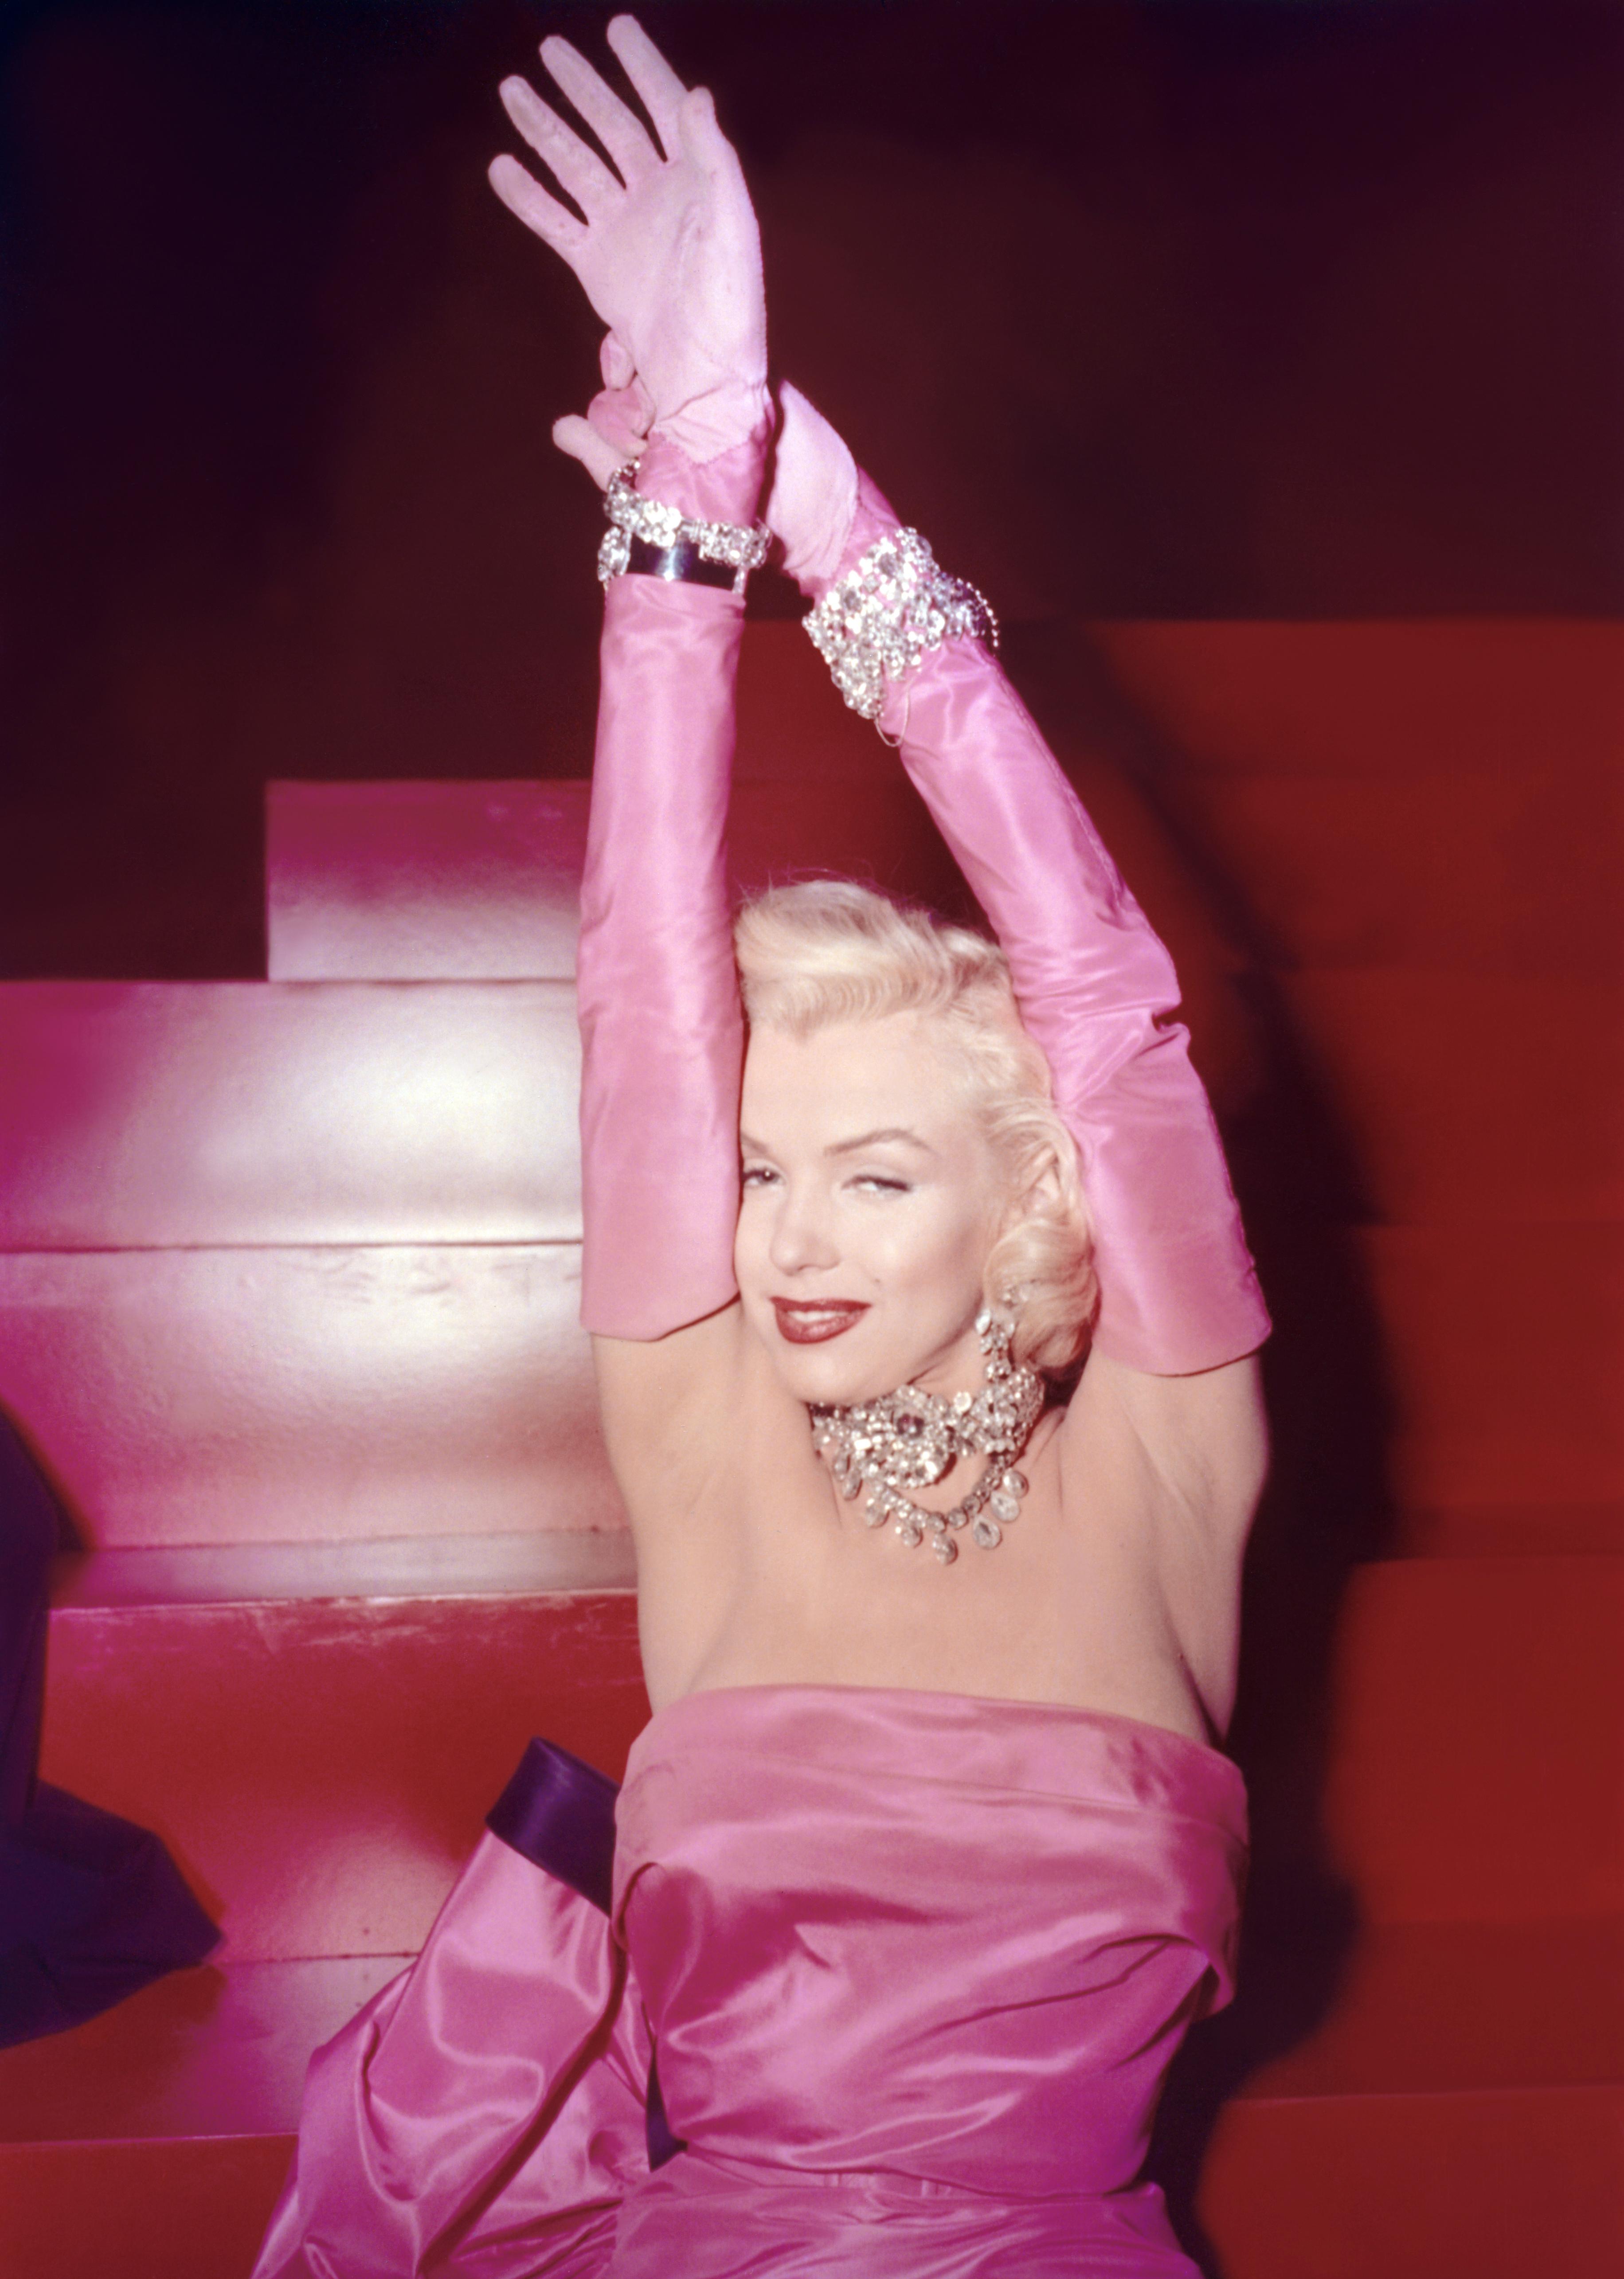 SJOKKROSA: Marilyn i den rosa kjolen som har blitt et historisk film-øyeblikk. 